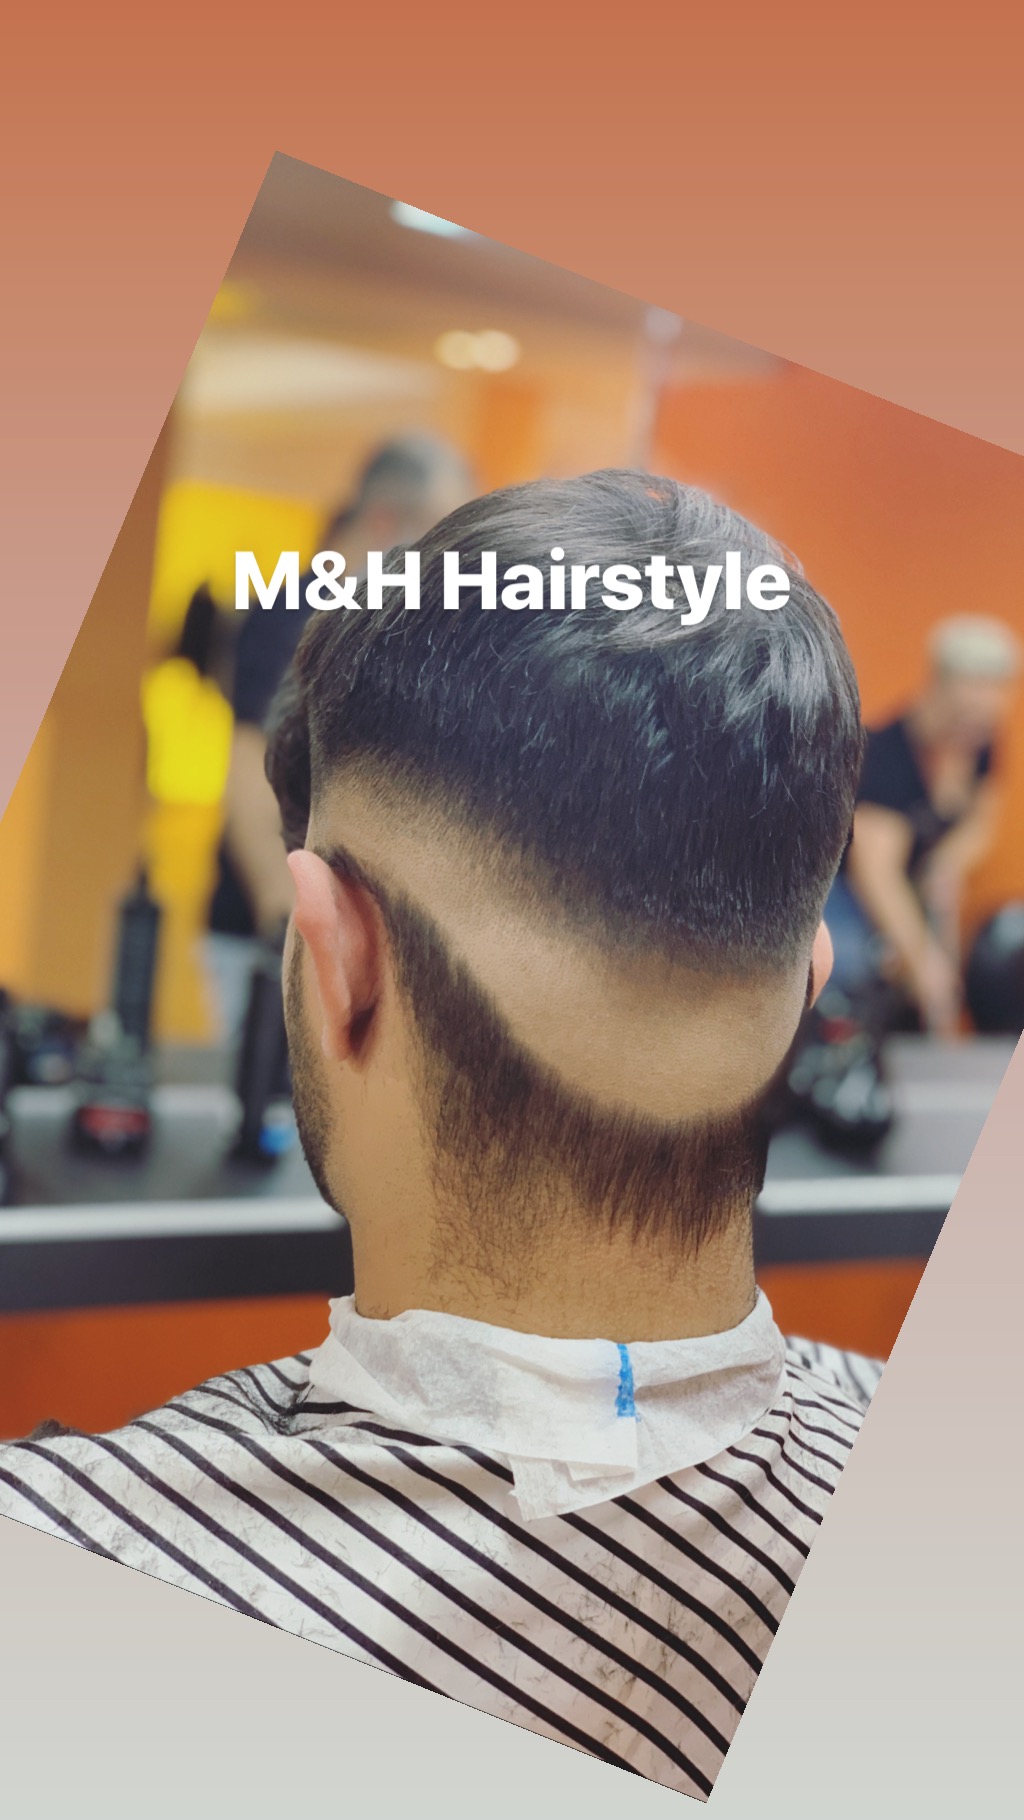 ➤ M H Hairstyle GBR 83022 Rosenheim-Innenstadt Öffnungszeiten | Adresse